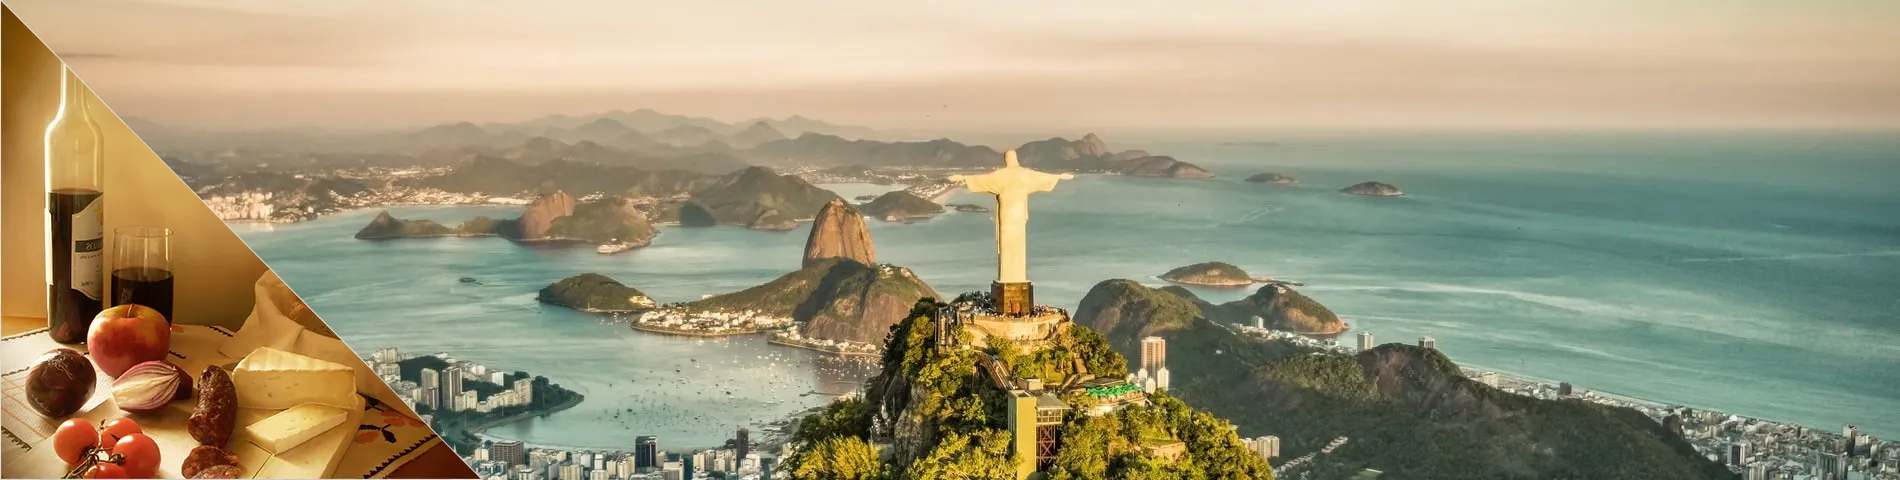 Ріо-де-Жанейро - португальська та пізнання культури